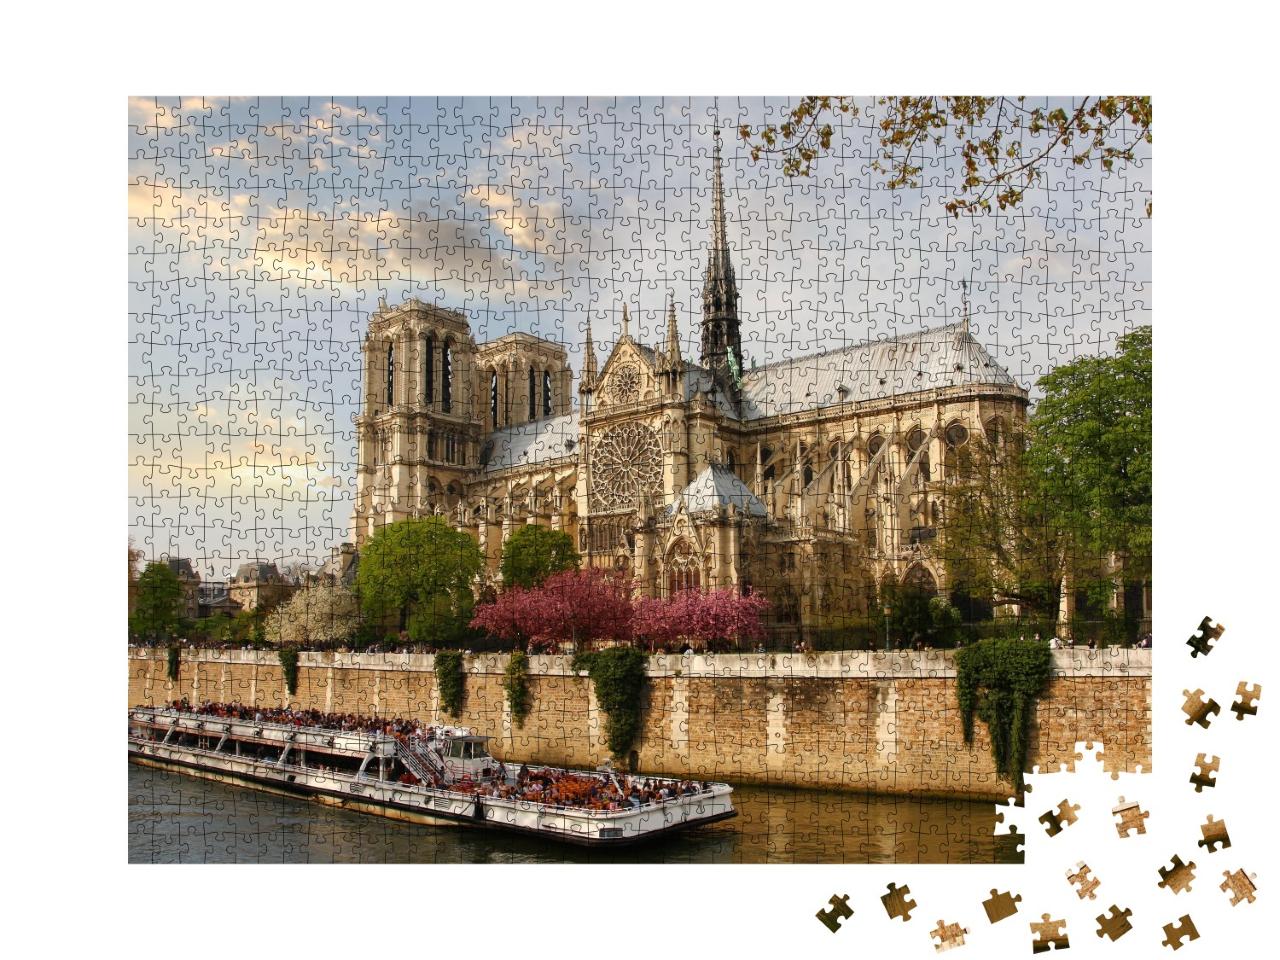 Puzzle de 1000 pièces « Paris, Notre-Dame avec bateau sur la Seine, France »